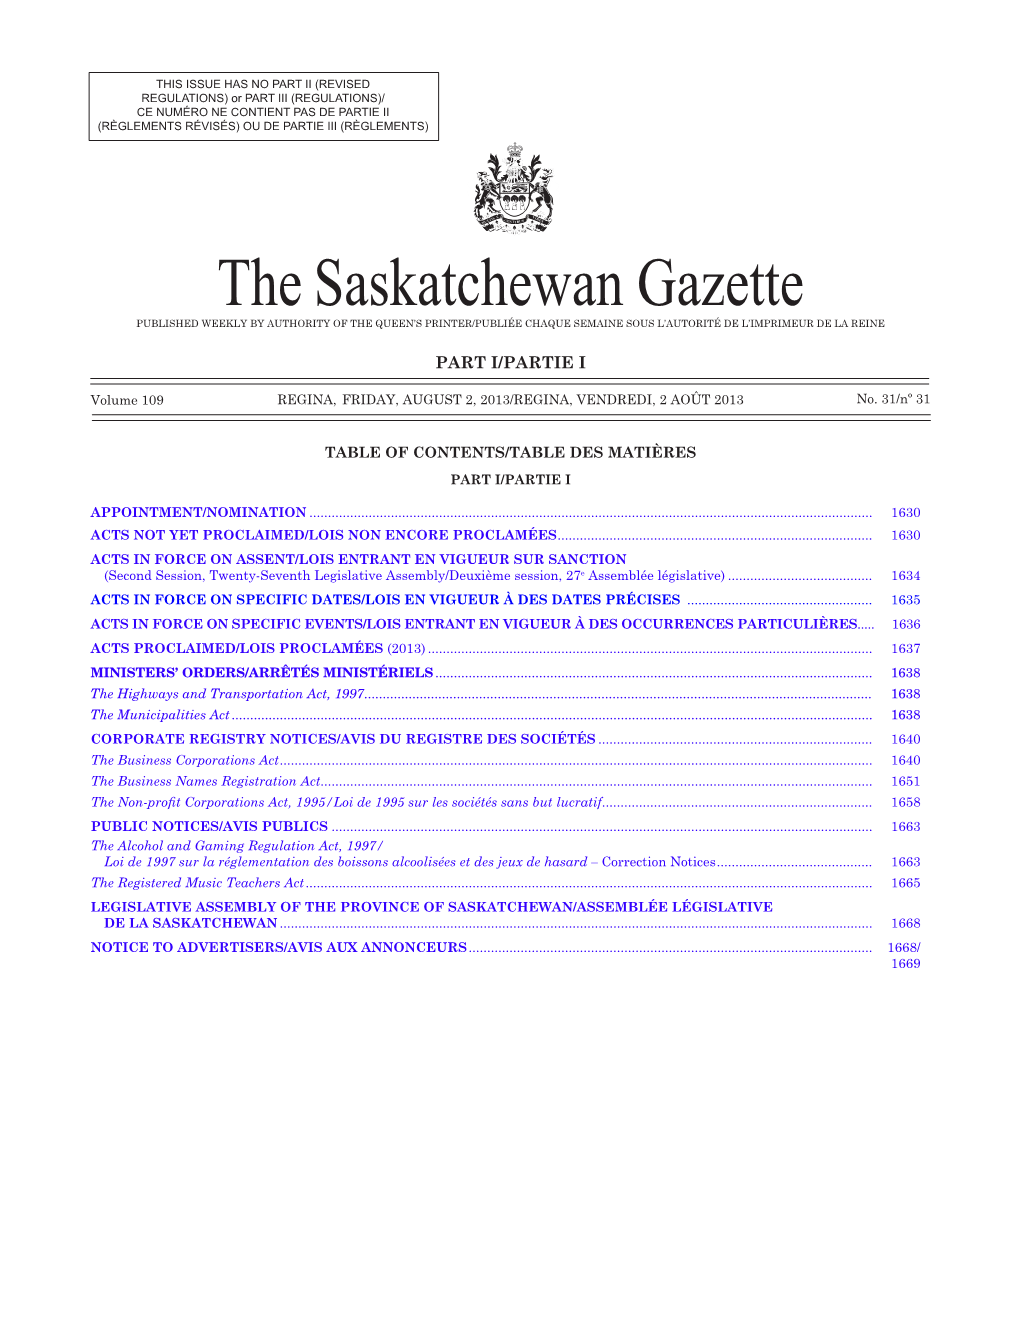 The Saskatchewan Gazette PUBLISHED WEEKLY by AUTHORITY of the QUEEN’S PRINTER/Publiée Chaque Semaine Sous L’Autorité De L’Imprimeur De La Reine